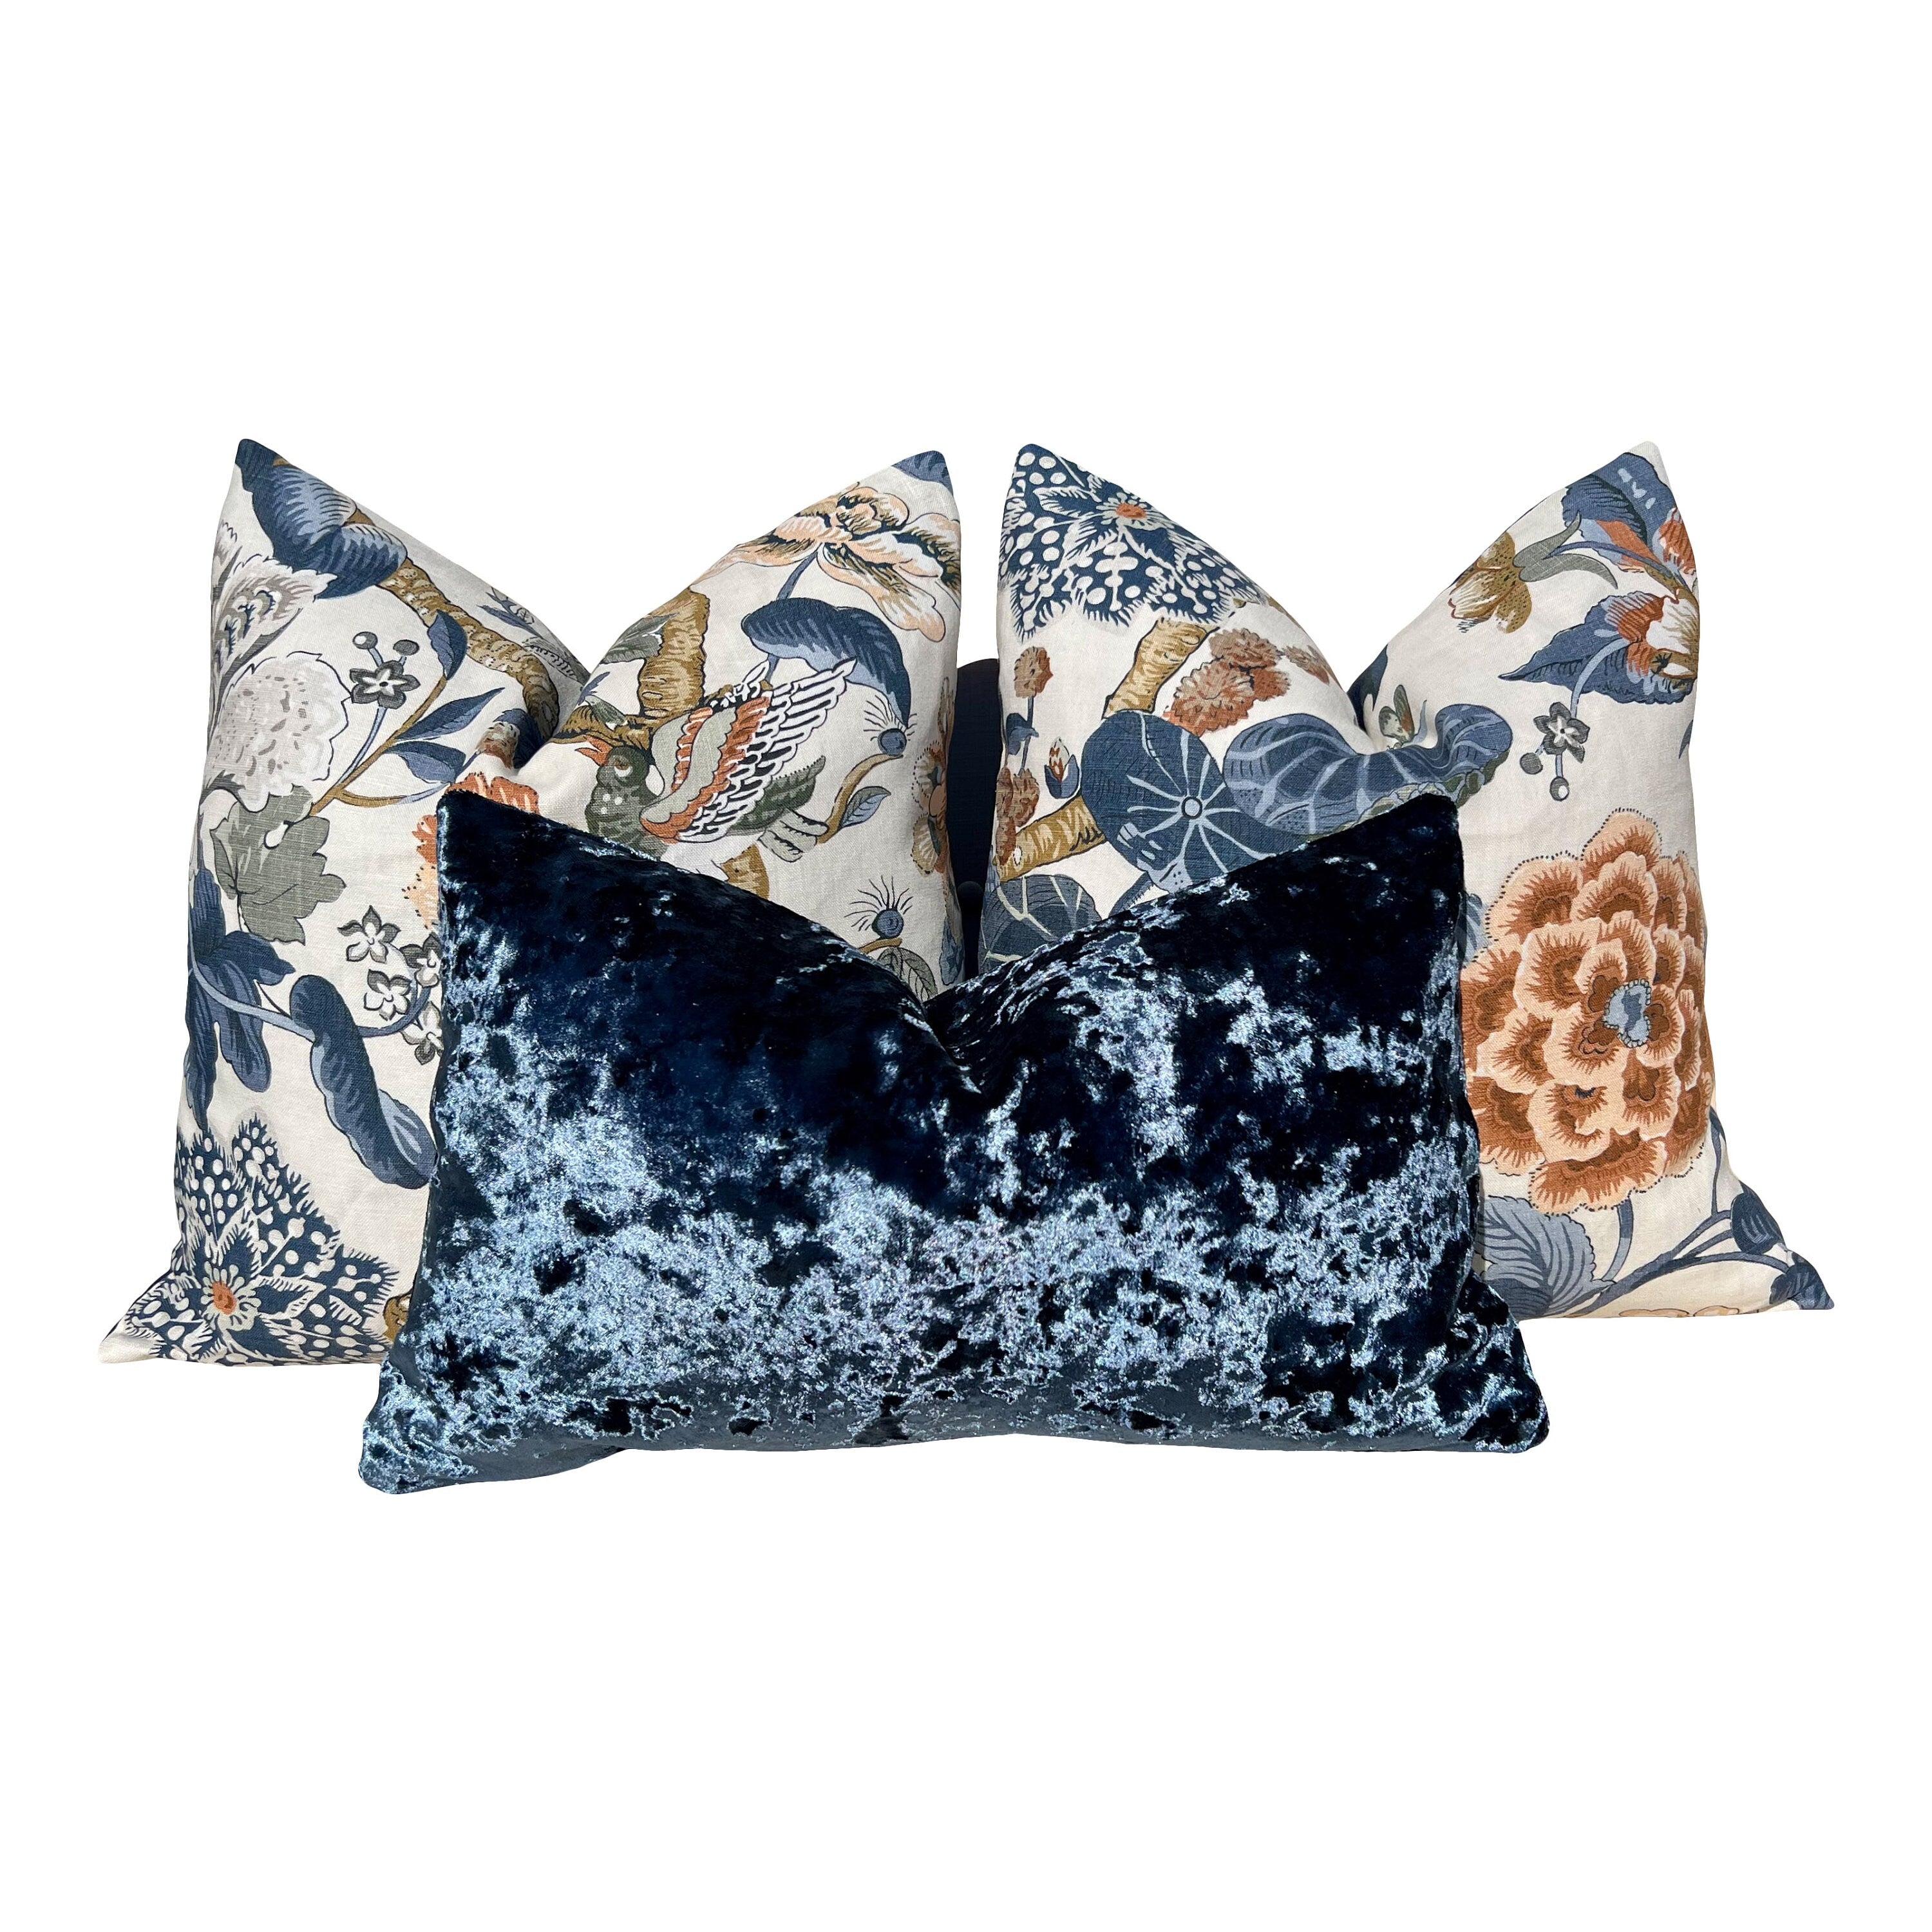 Designer Crushed Velvet Pillow in Navy Blue. High End Velvet Pillows, Lumbar Velvet Pillows, Euro Sham Pillows, Pillows for Sofa